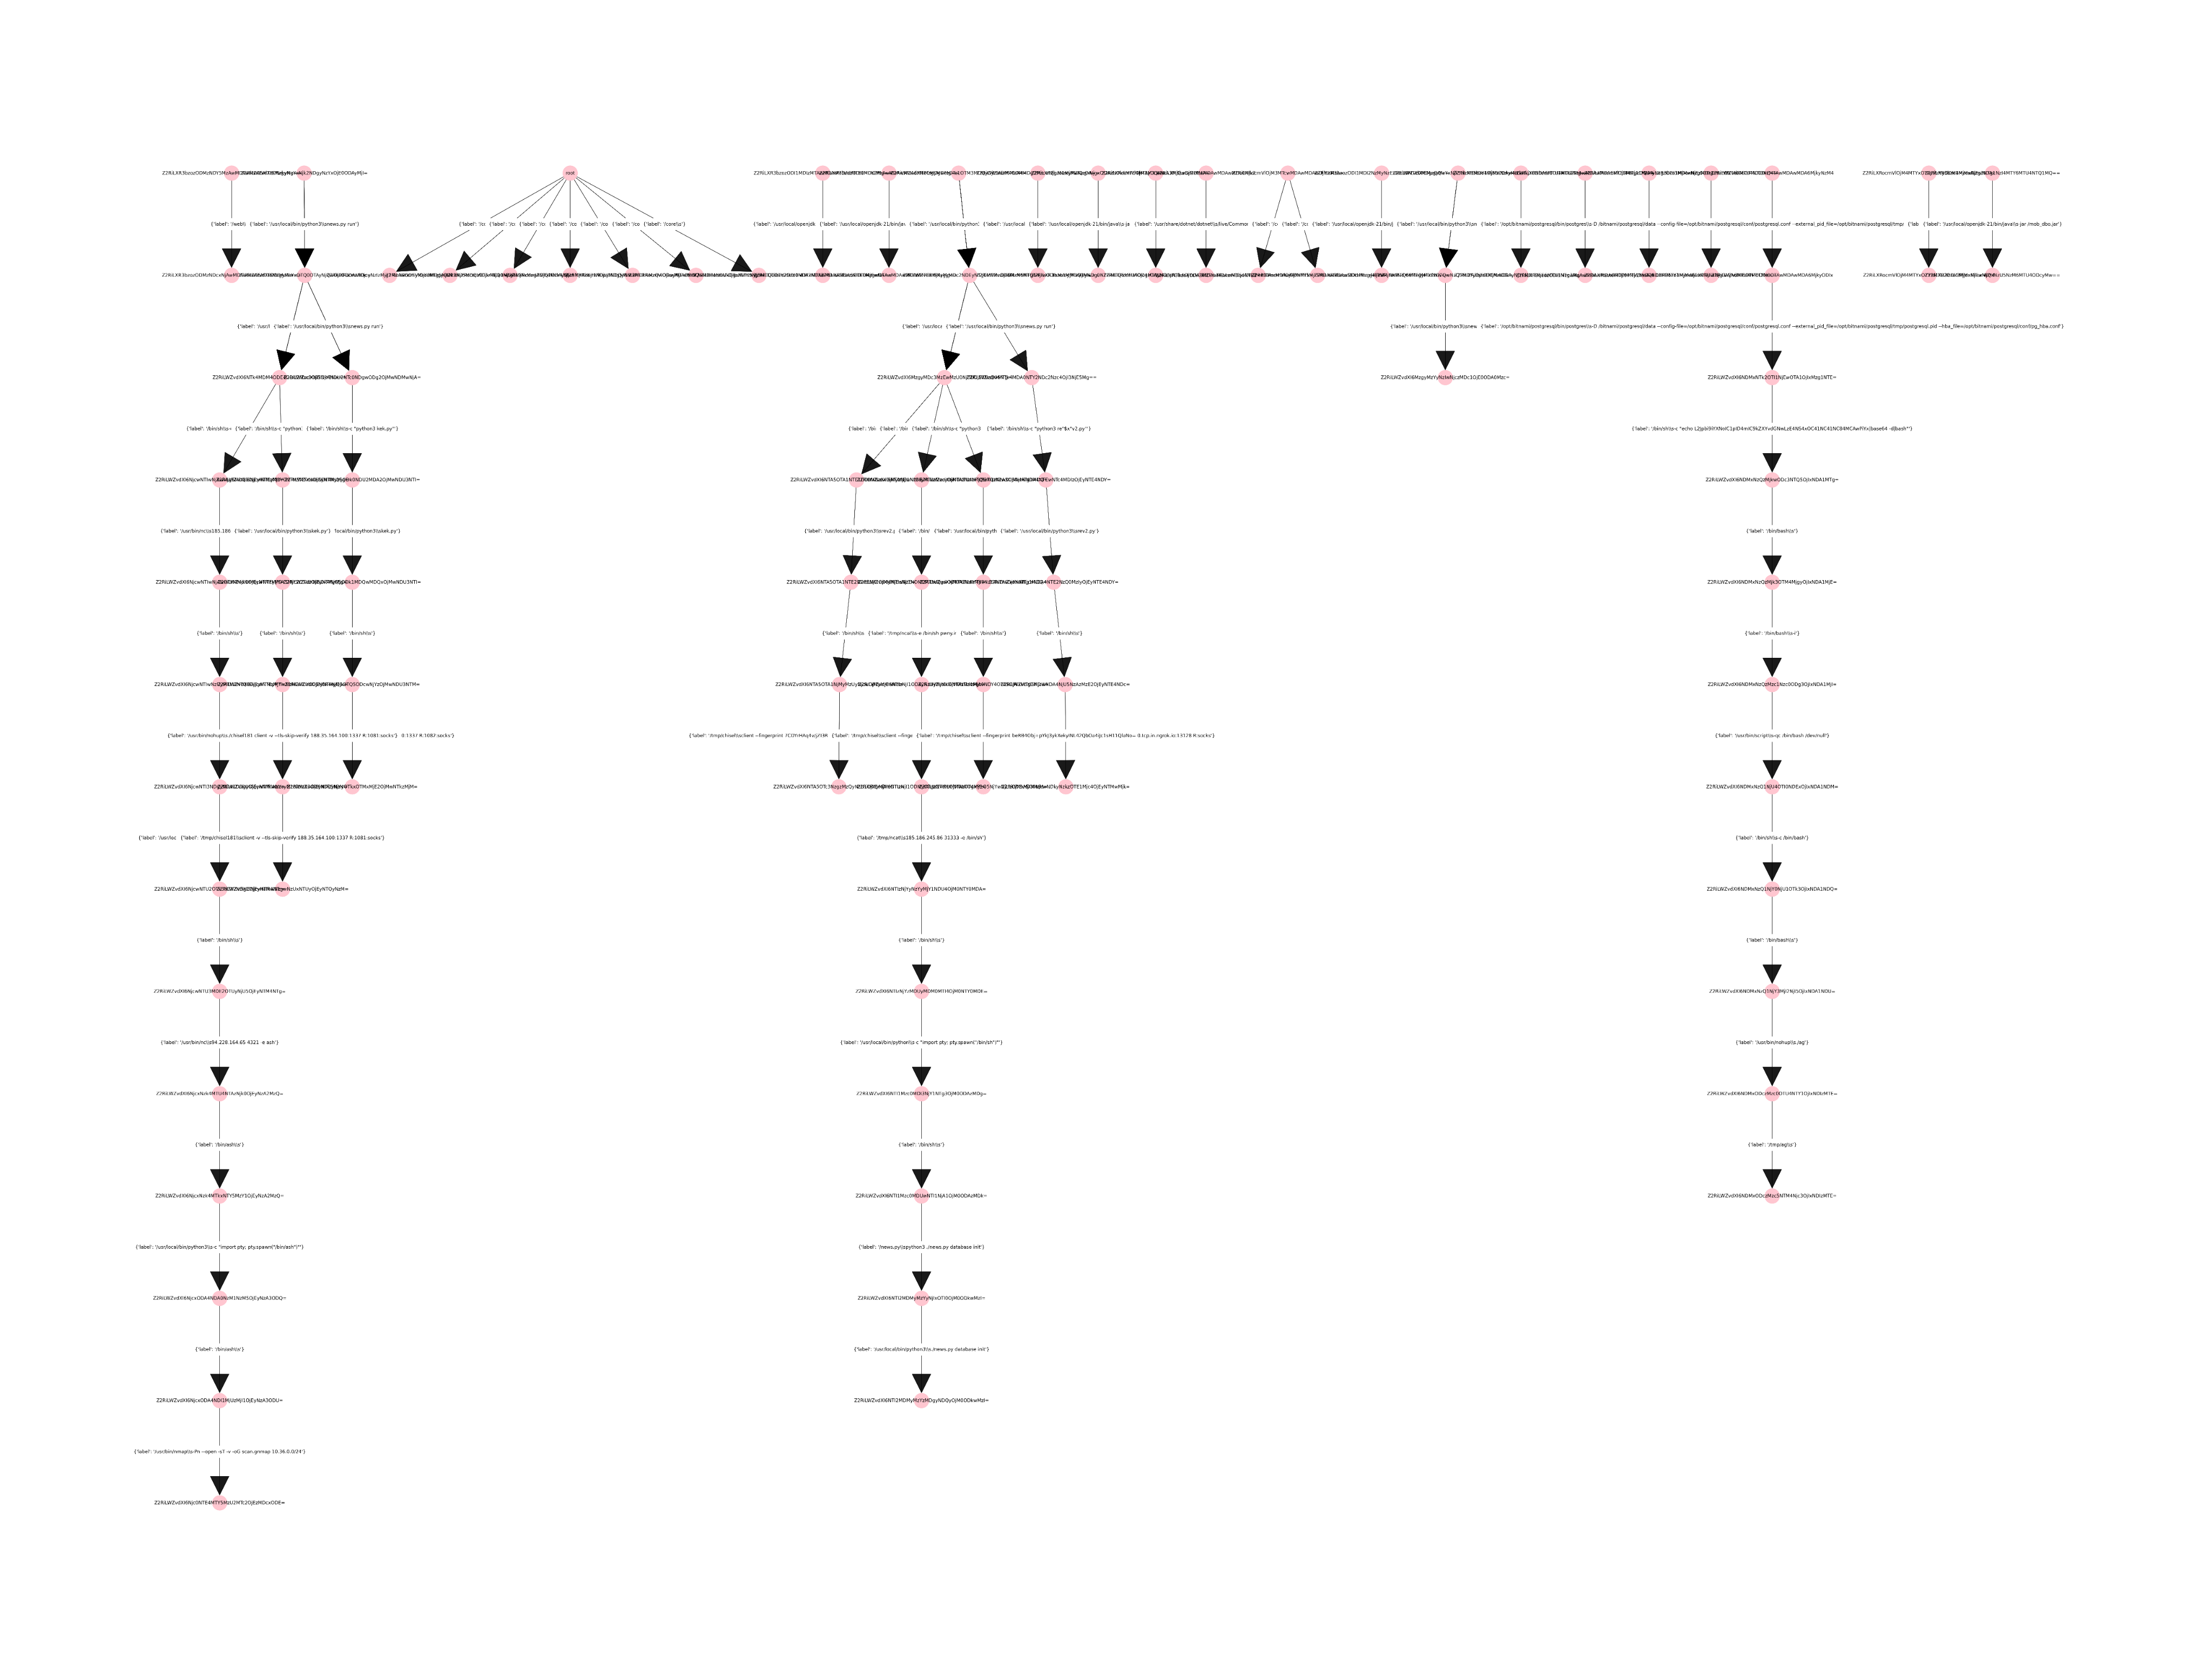 Дерево процессов для событий, обнаруженных детекторами на Standoff 12 (схема в полном размере доступна здесь)